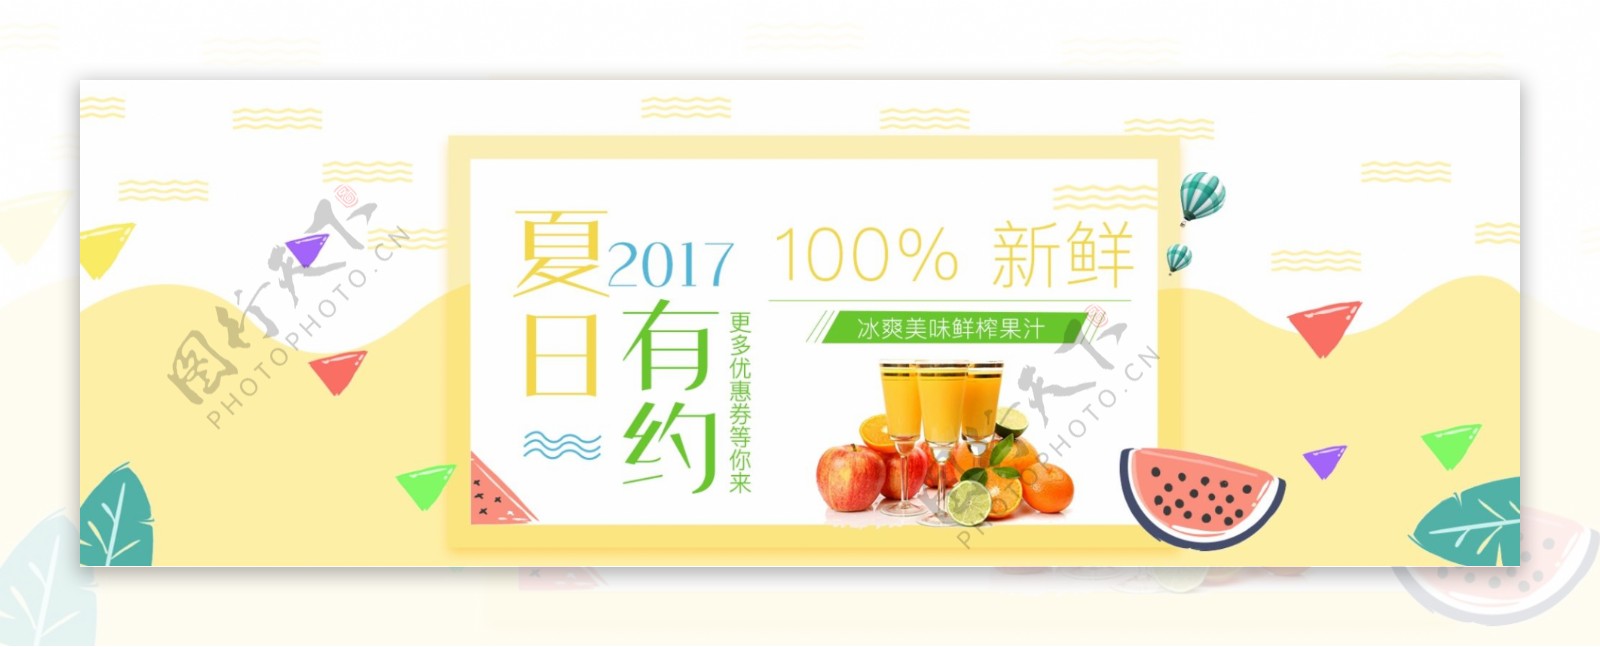 电商淘宝夏日有约鲜榨果汁促销海报banner